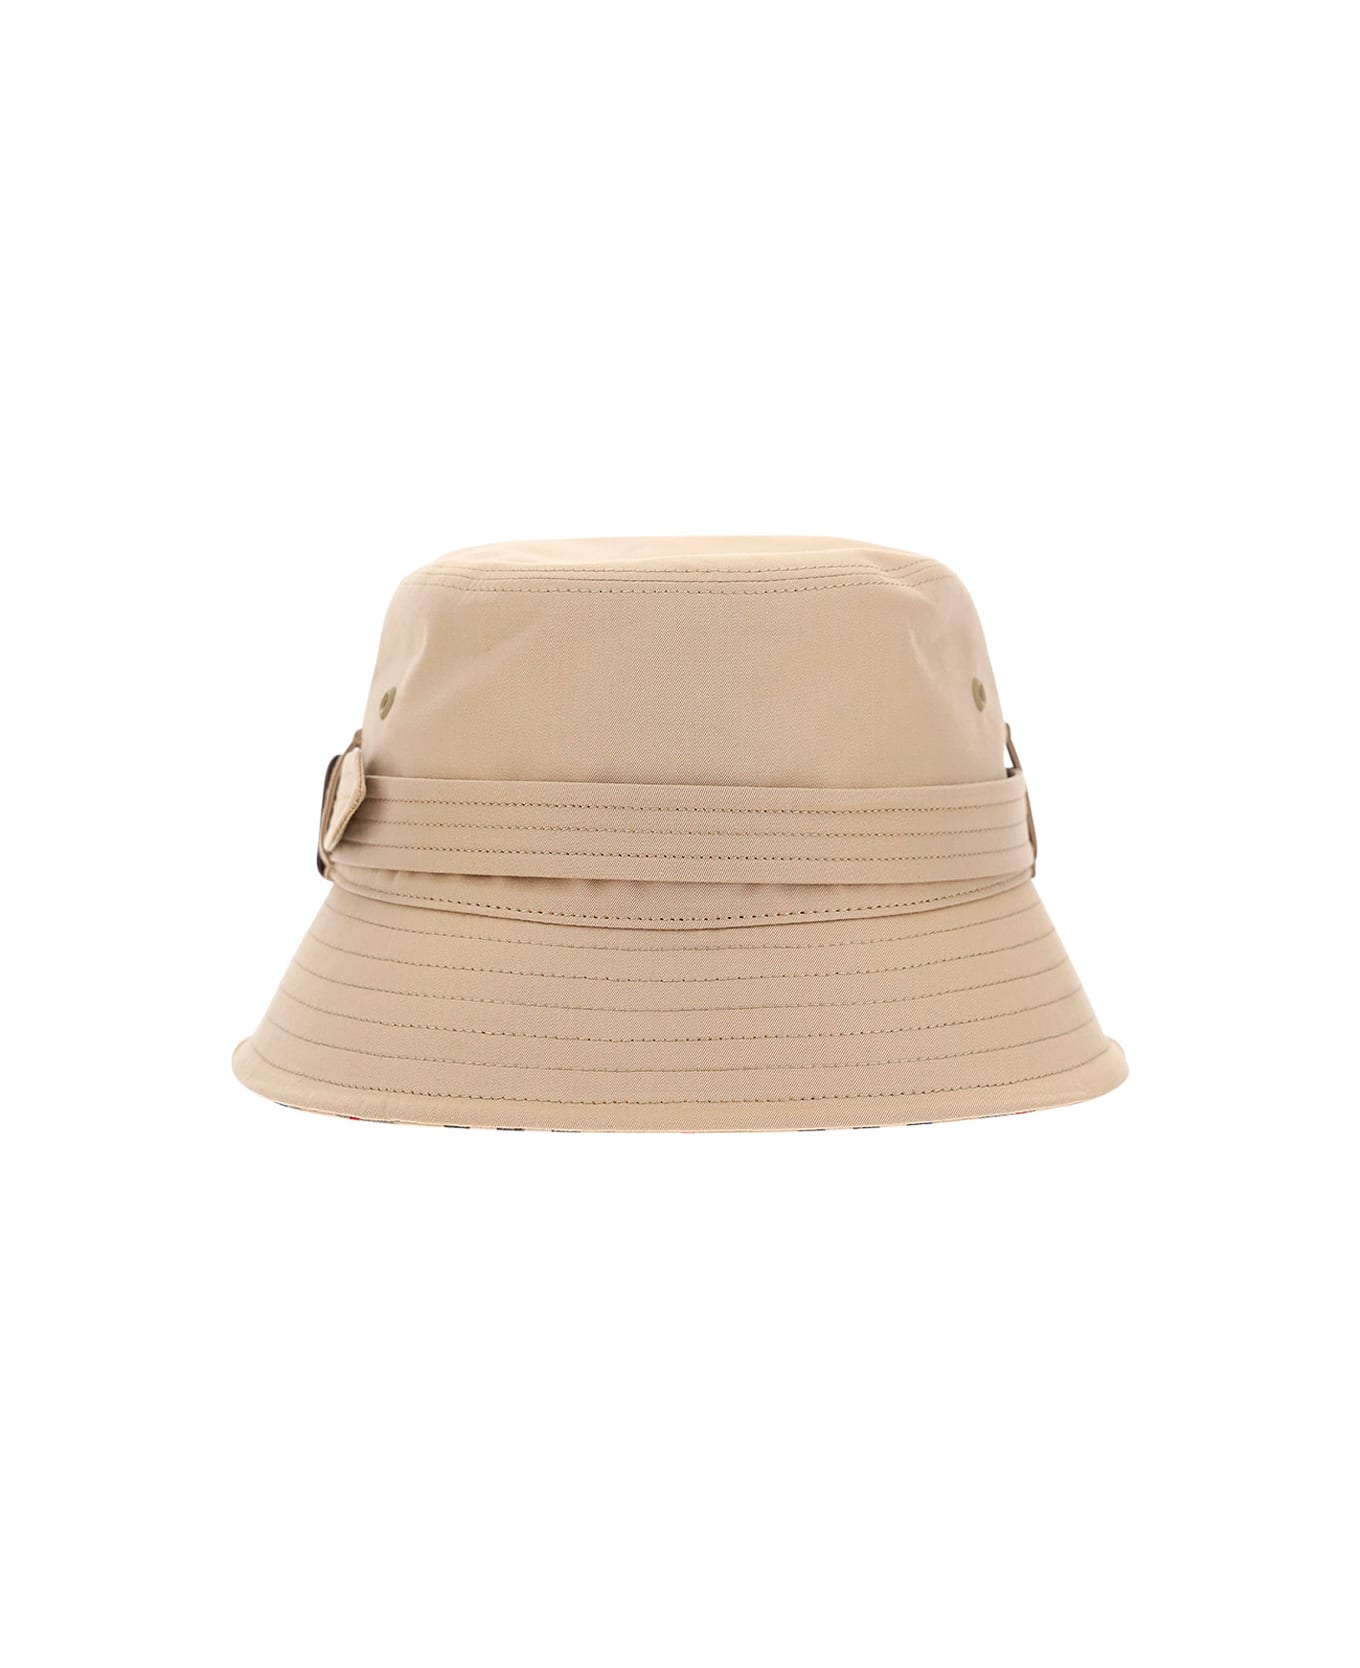 Burberry Bucket Hat - Honey Beige